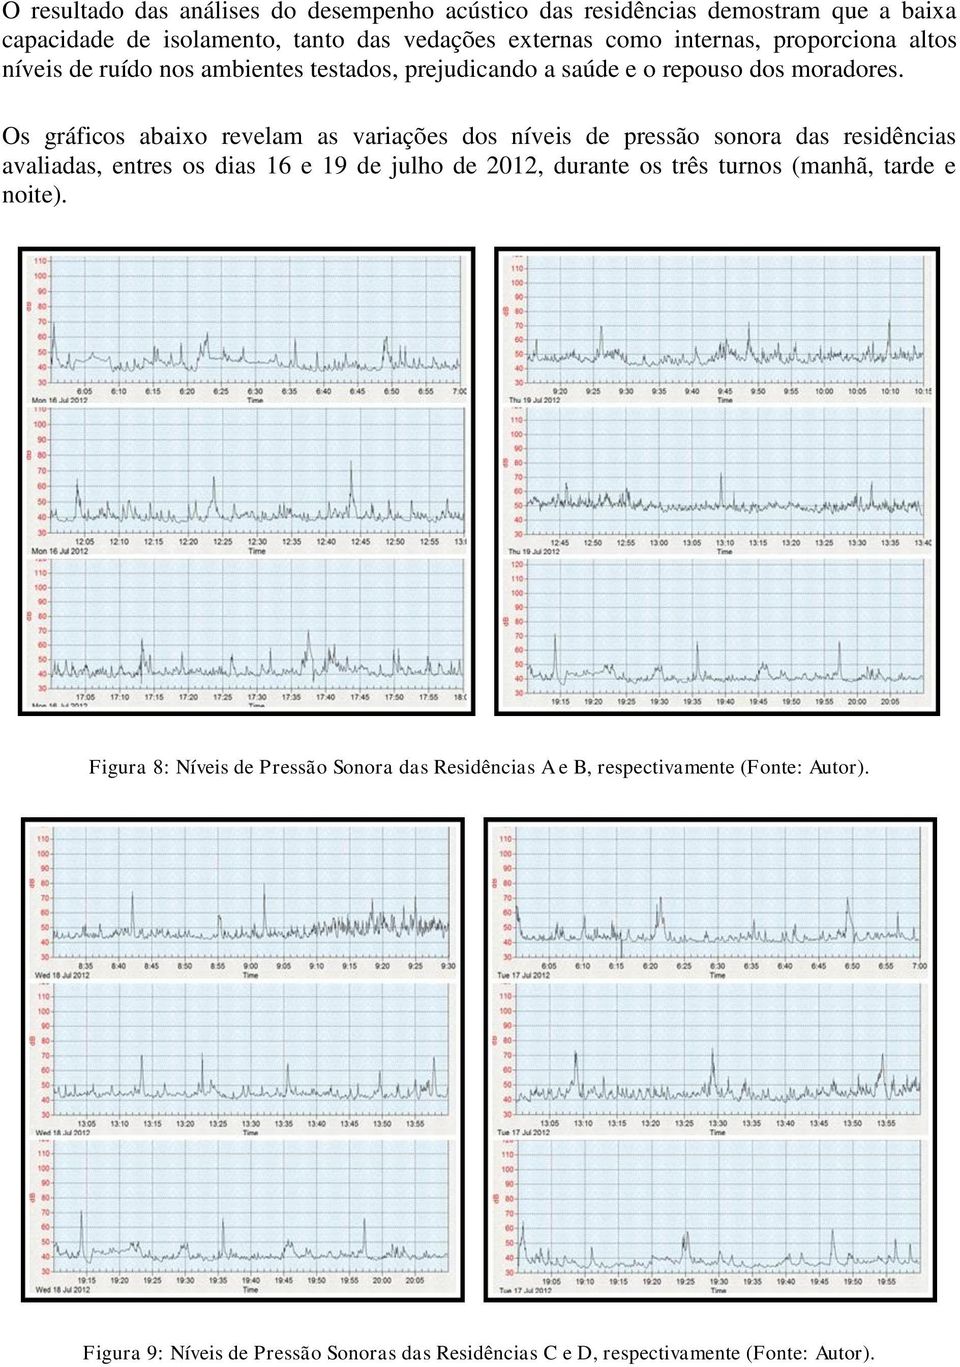 Os gráficos abaixo revelam as variações dos níveis de pressão sonora das residências avaliadas, entres os dias 16 e 19 de julho de 2012, durante os três